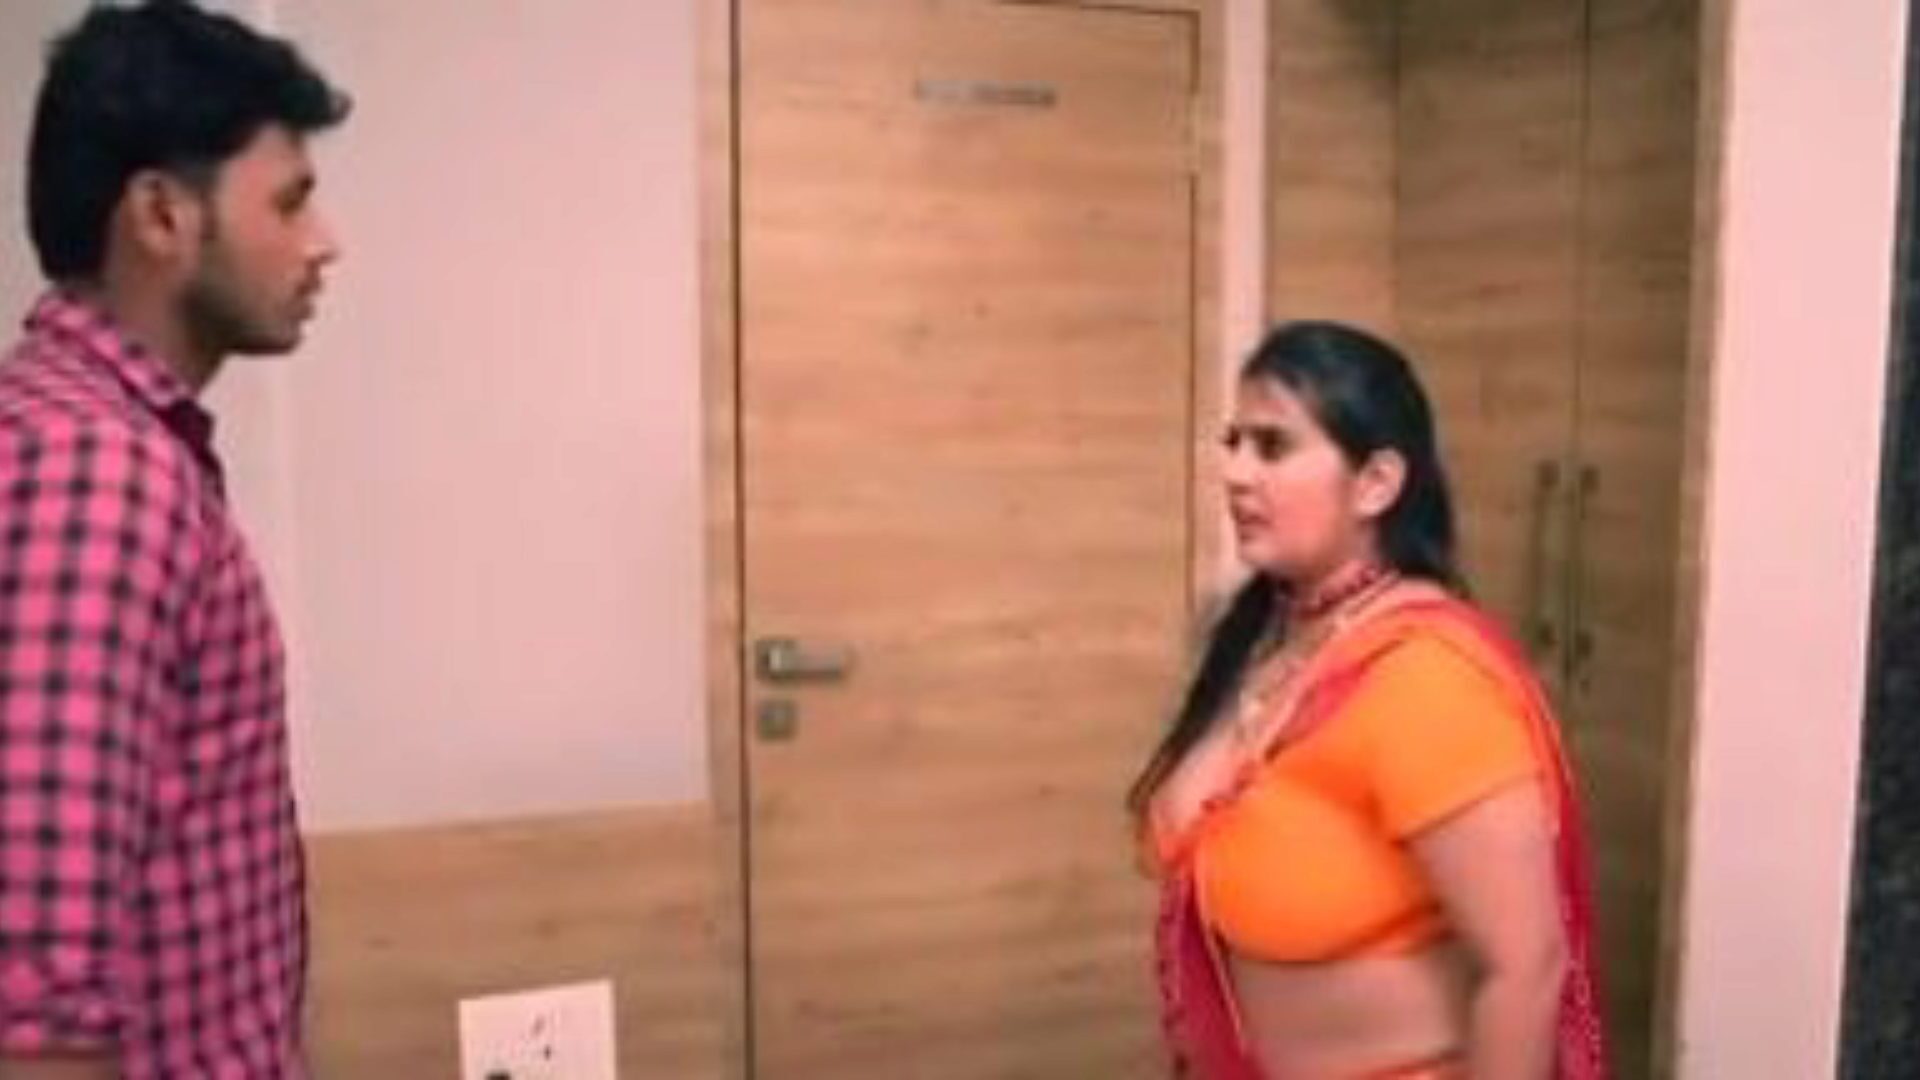 kanchan tia ep5: vídeo pornográfico tia xxx grátis 03 - xhamster assistir a cena de filme de sexo de tubo de tia ep5 kanchan de graça para todos no xhamster, com o bando superior de bangladeshi tia xxx e vinhetas de filmes pornôs de tia móvel